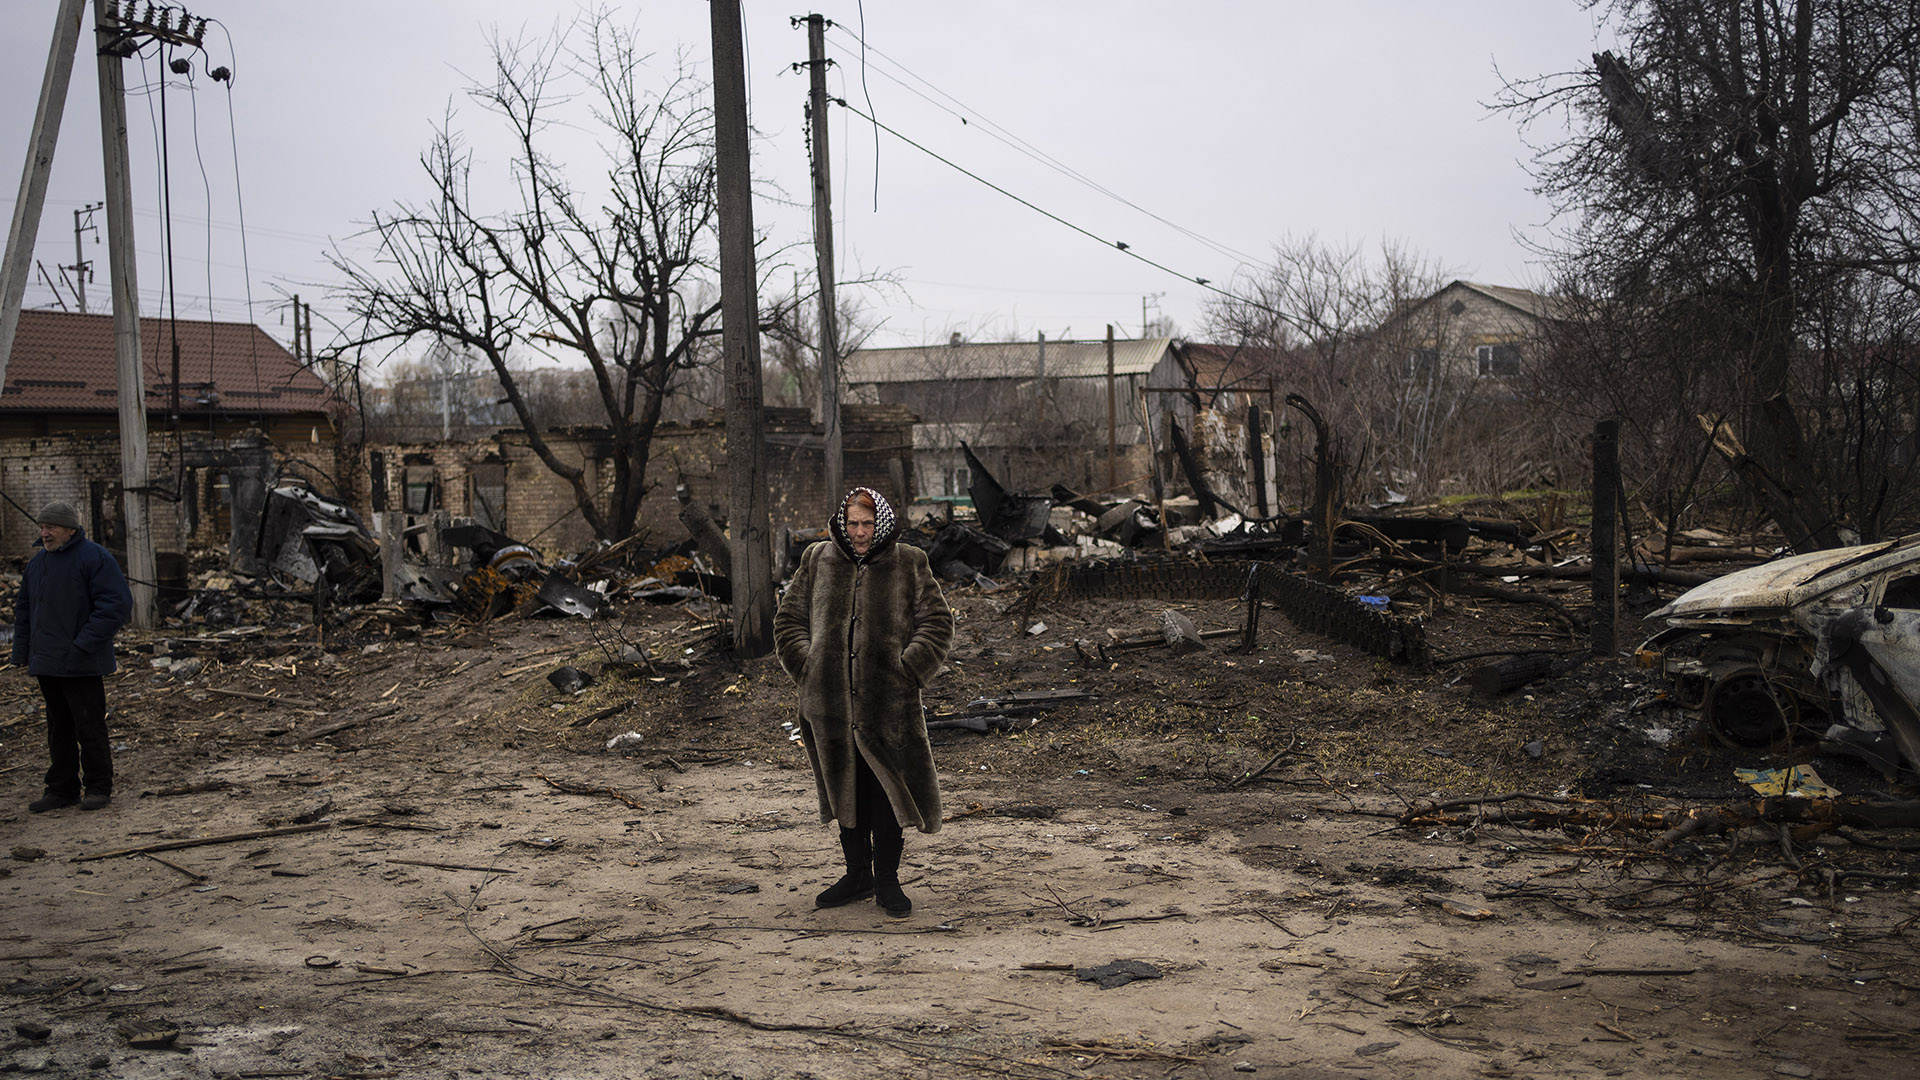 Una mujer camina en medio de la destrucción causada por la guerra en Bucha, en las afueras de Kiev, Ucrania, el martes 5 de abril de 2022. La ciudad fue uno de los escenarios de las atrocidades del ejército ruso contra civiles ucranianos (AP Photo/Rodrigo Abd)